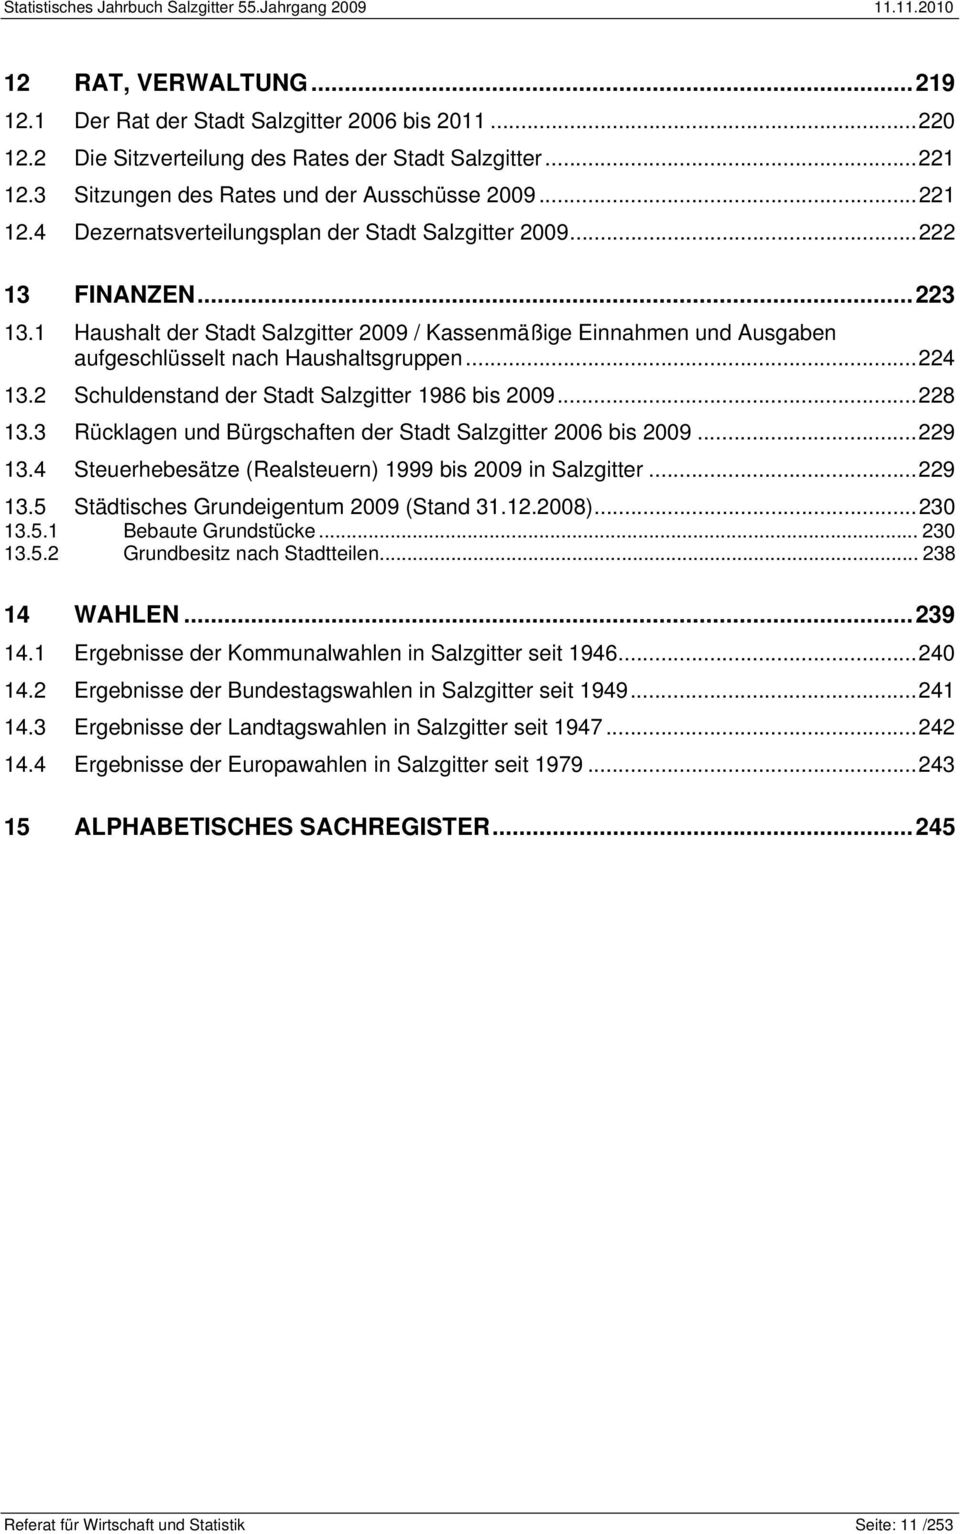 1 Haushalt der Stadt Salzgitter 2009 / Kassenmäßige Einnahmen und Ausgaben aufgeschlüsselt nach Haushaltsgruppen... 224 13.2 Schuldenstand der Stadt Salzgitter 1986 bis 2009... 228 13.